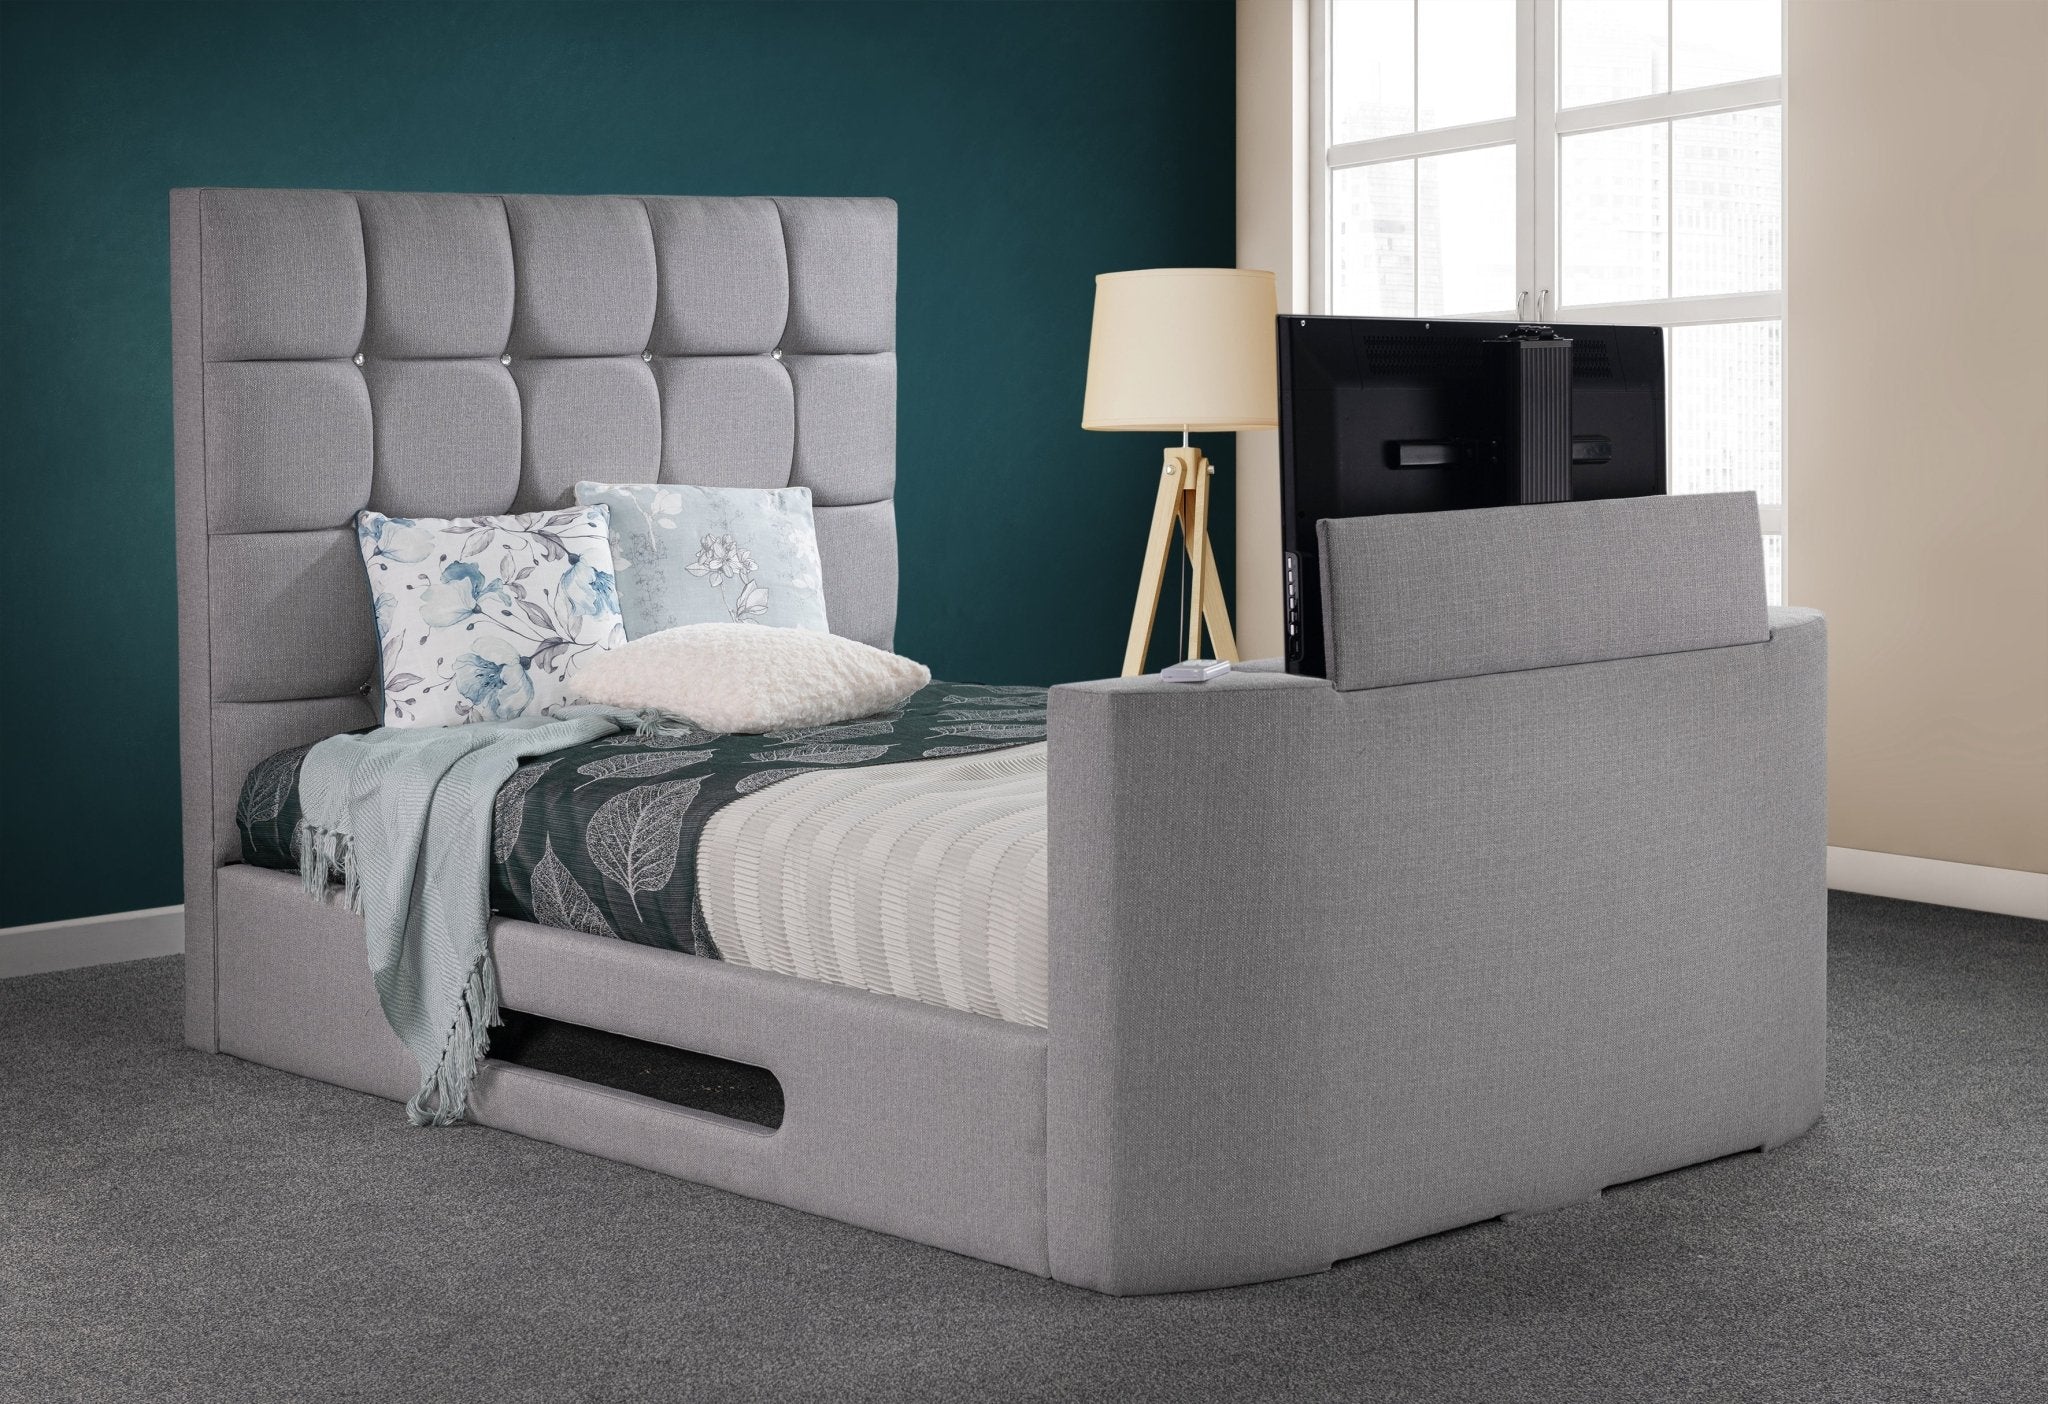 Jasmine Jewel Adjustable TV Bed Frame - Sweet Dreams - TV Beds Northwest - Adjustable - adjustable bed